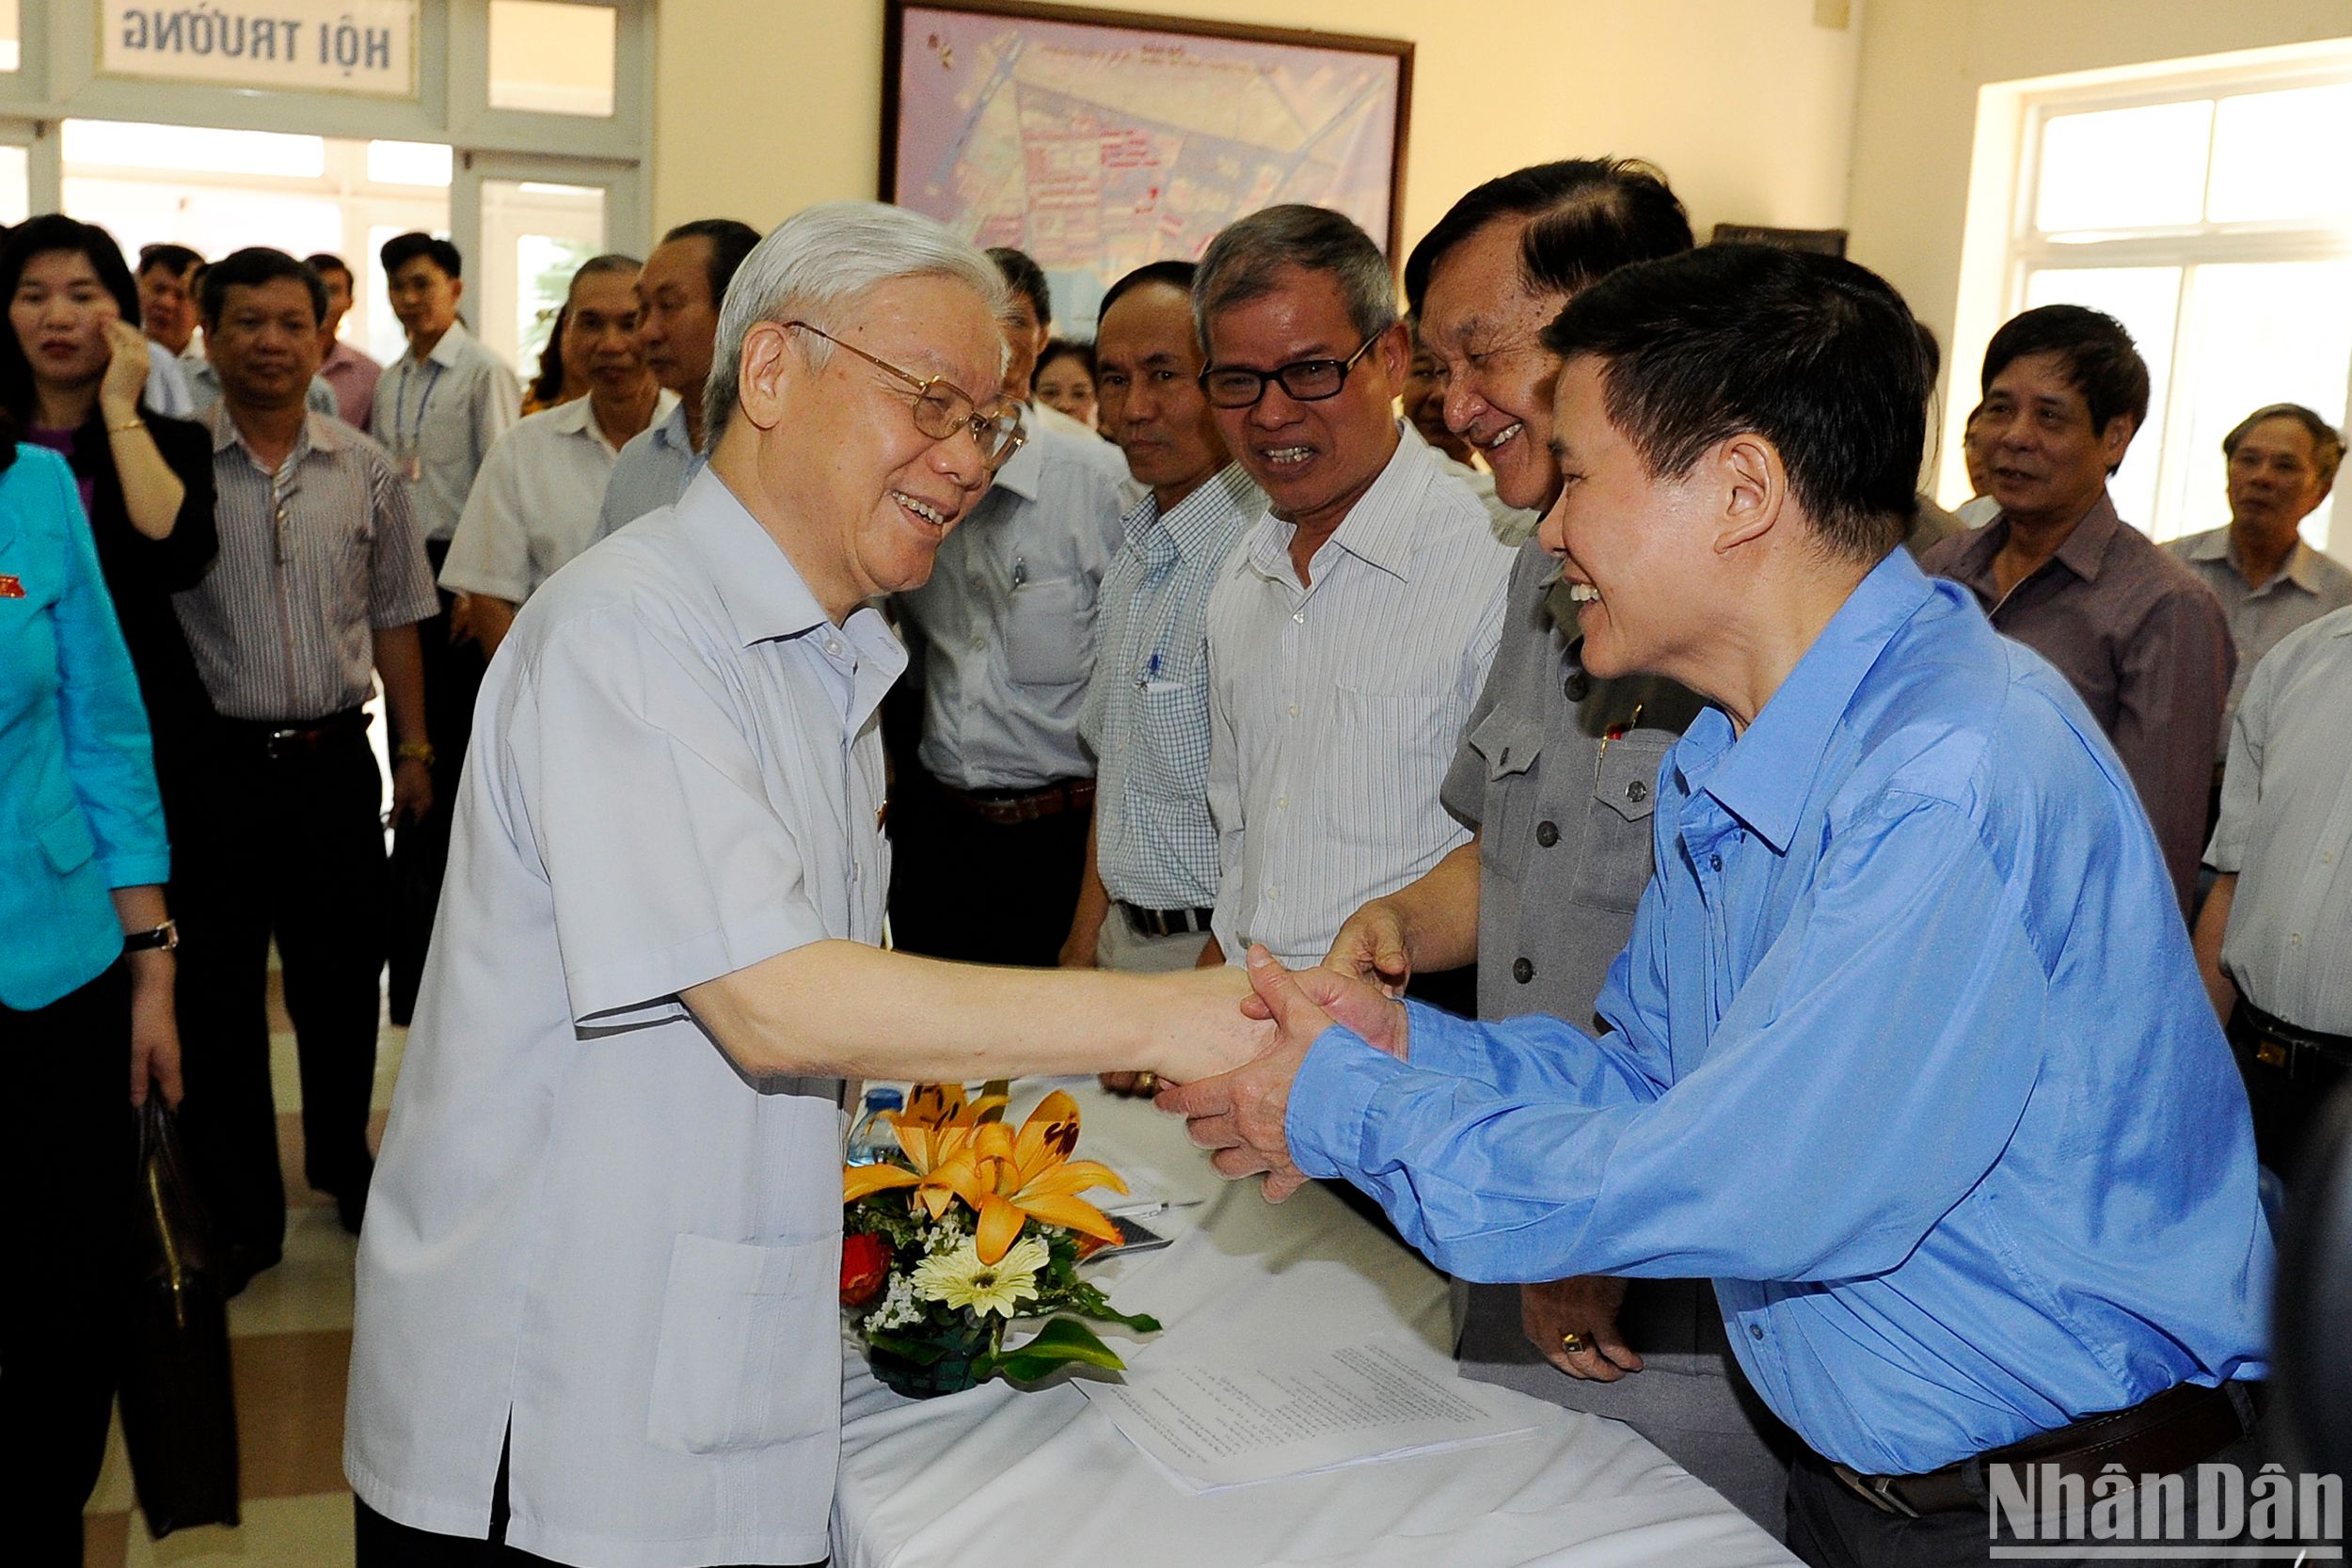 Hình ảnh giản dị, gần gũi khi Tổng Bí thư Nguyễn Phú Trọng tiếp xúc cử tri thành phố Hà Nội.